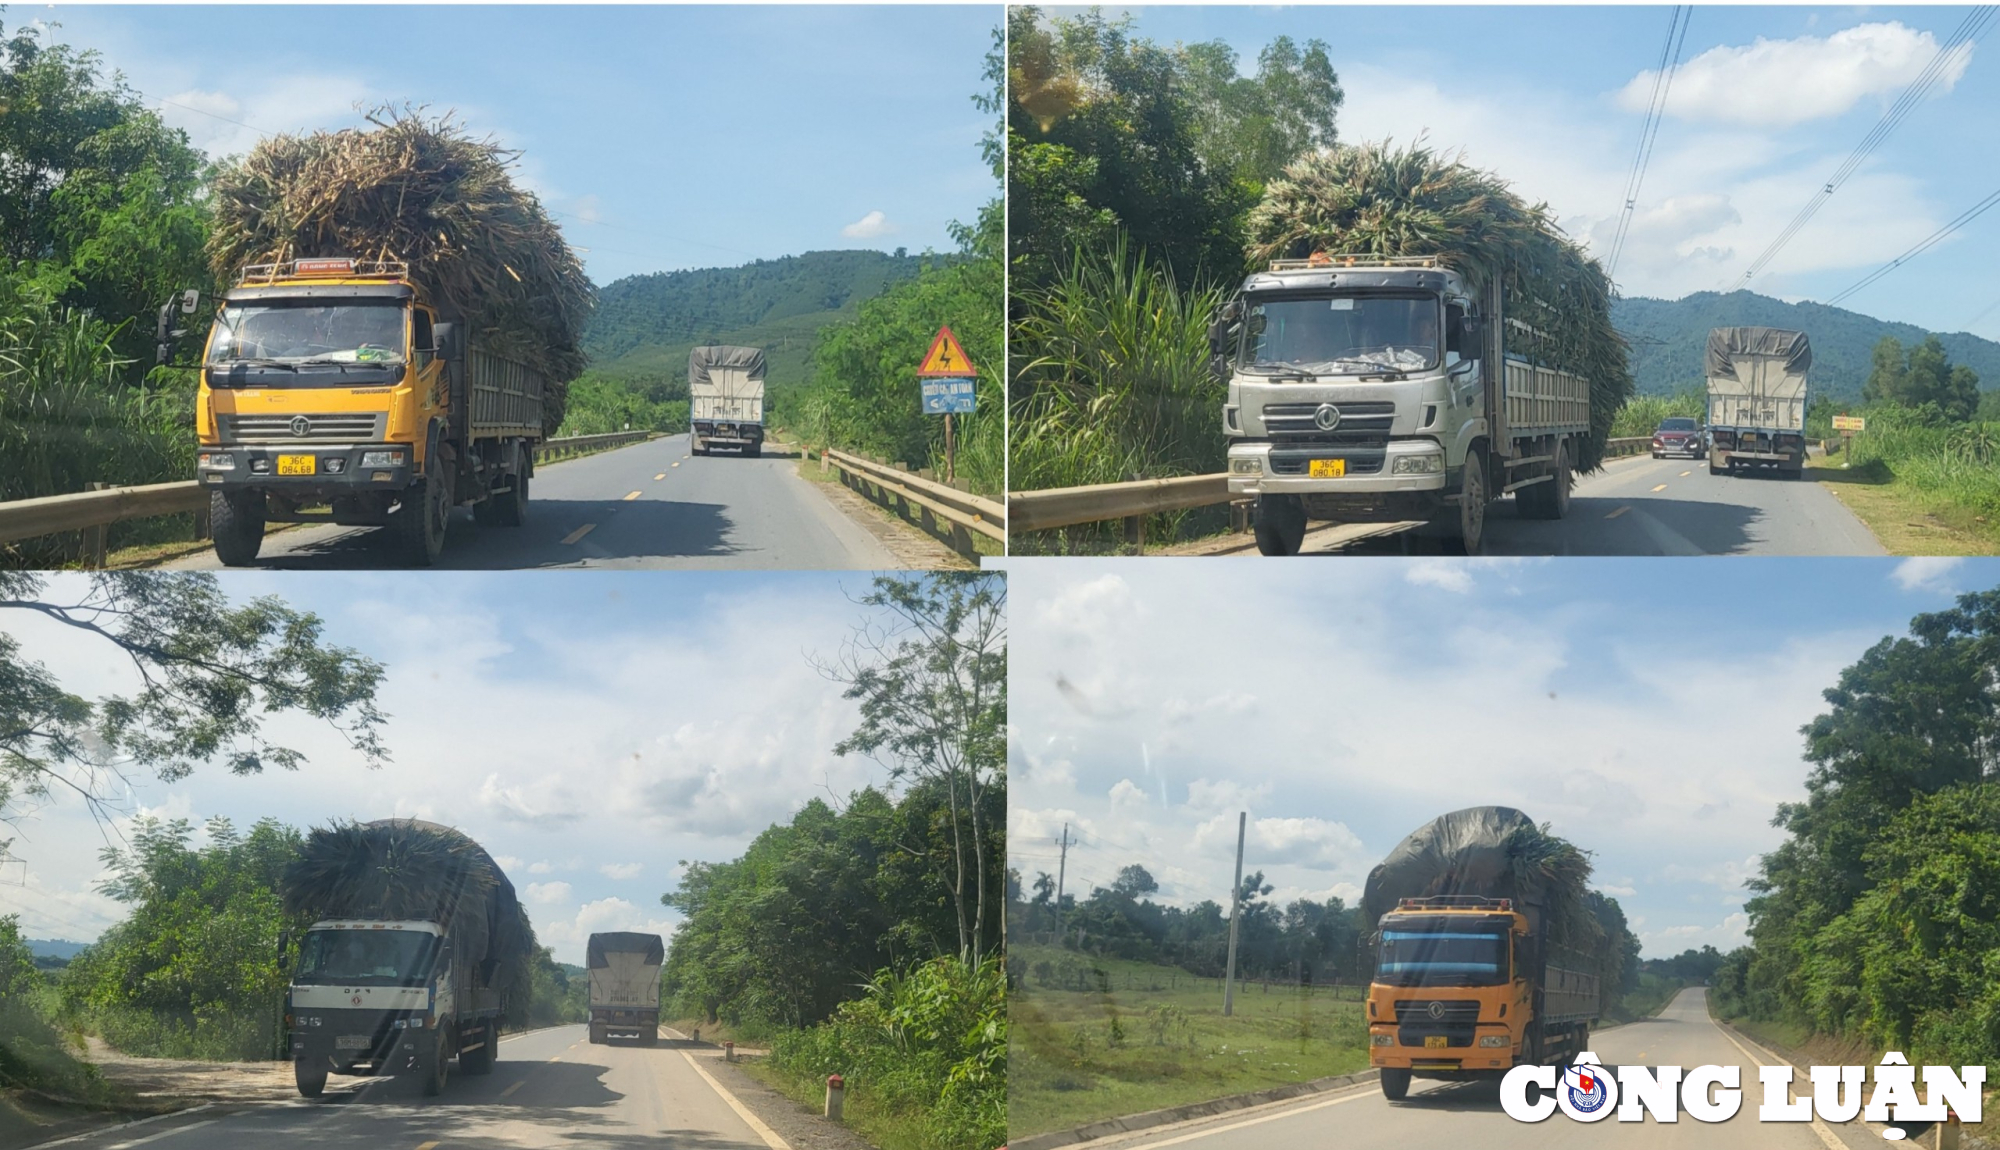 Các phương tiện chở hàng lưu thông trên đường mòn Hồ Chí Minh đoạn qua tỉnh Thanh Hoá

